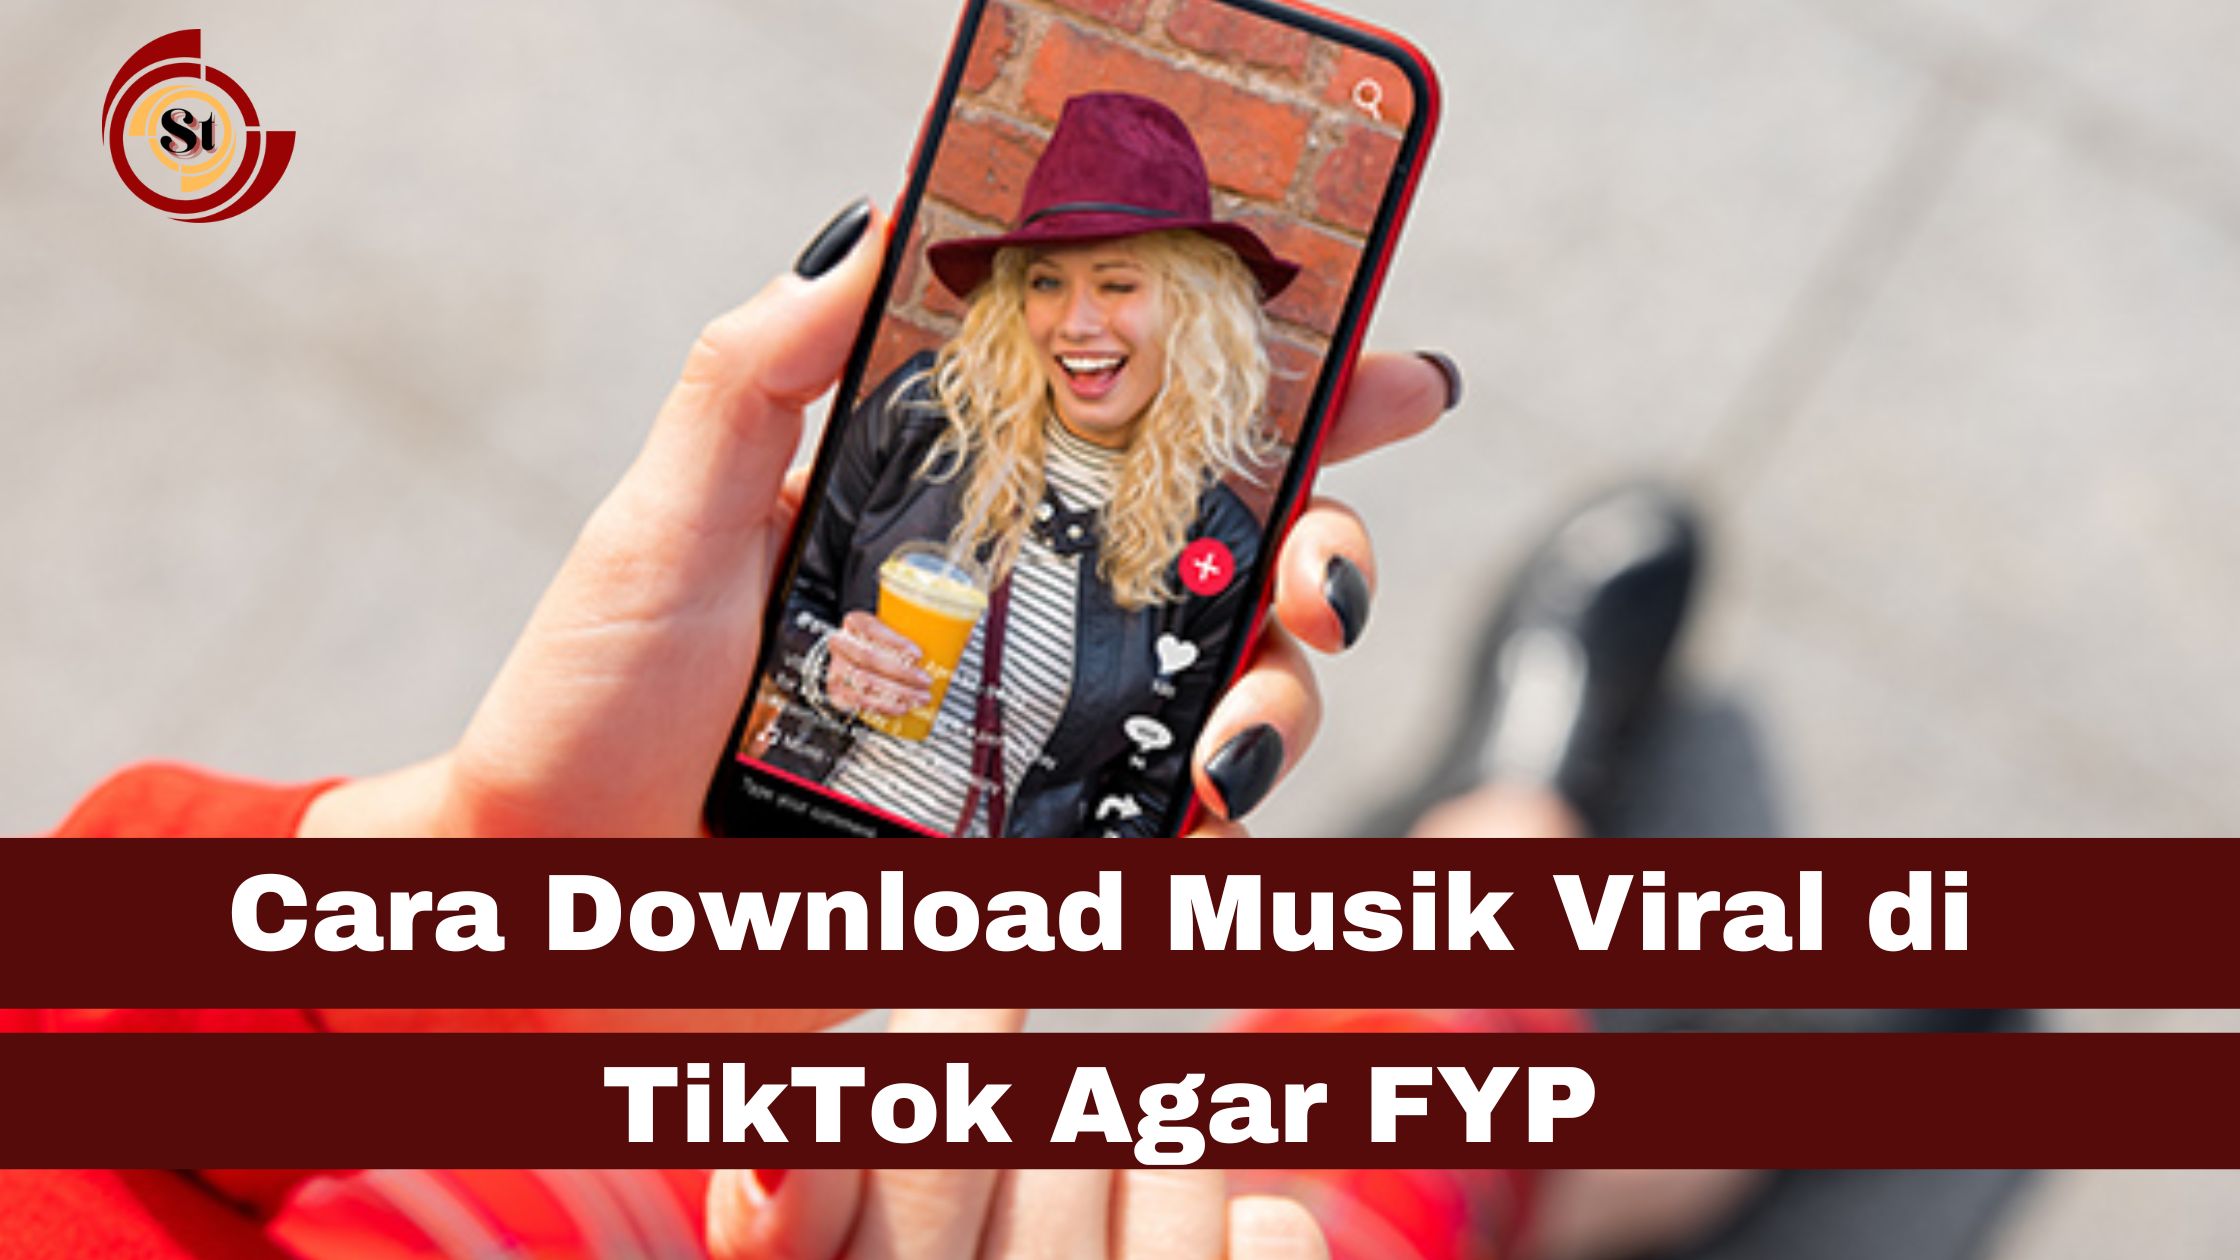 Cara Download Musik Viral di TikTok Agar FYP